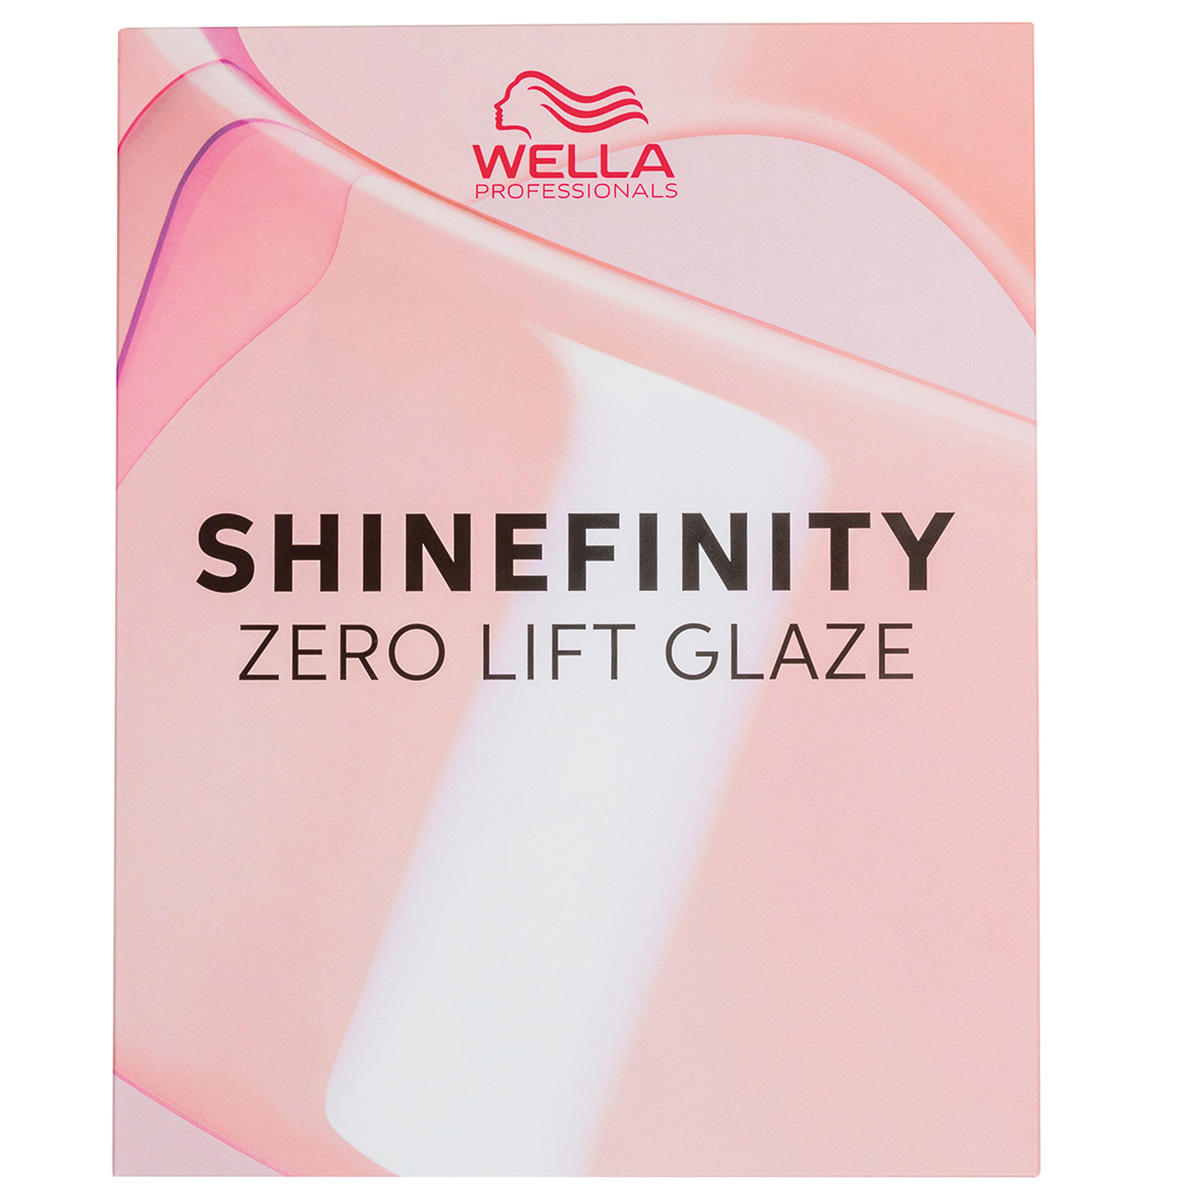 Wella Shinefinity Kleurenkaart  - 1